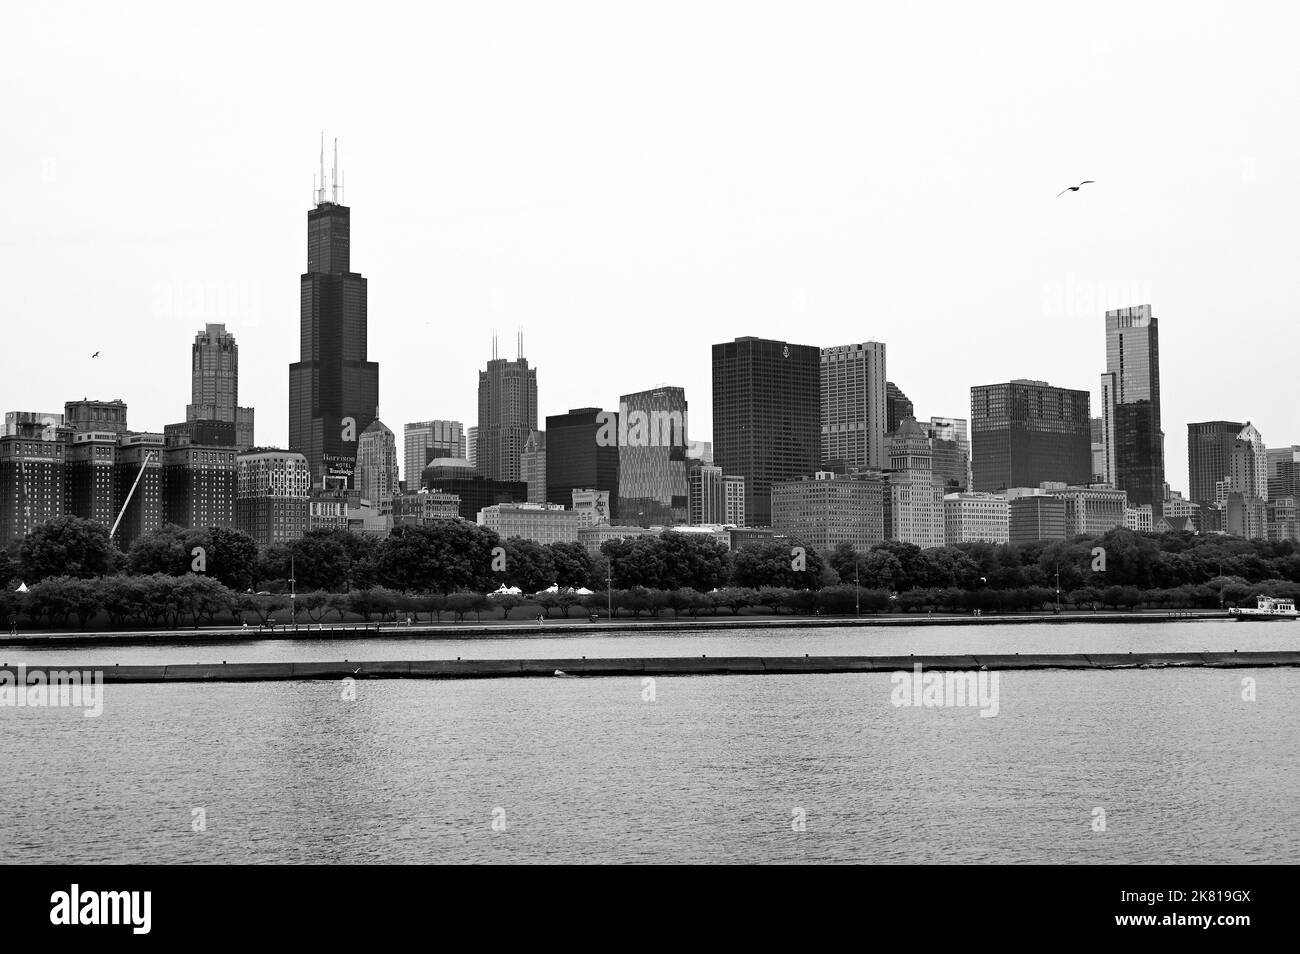 Skyline am Lake Michigan mit Willis Tower; Chicago, Illinois, Vereinigte Staaten von Amerika Stockfoto